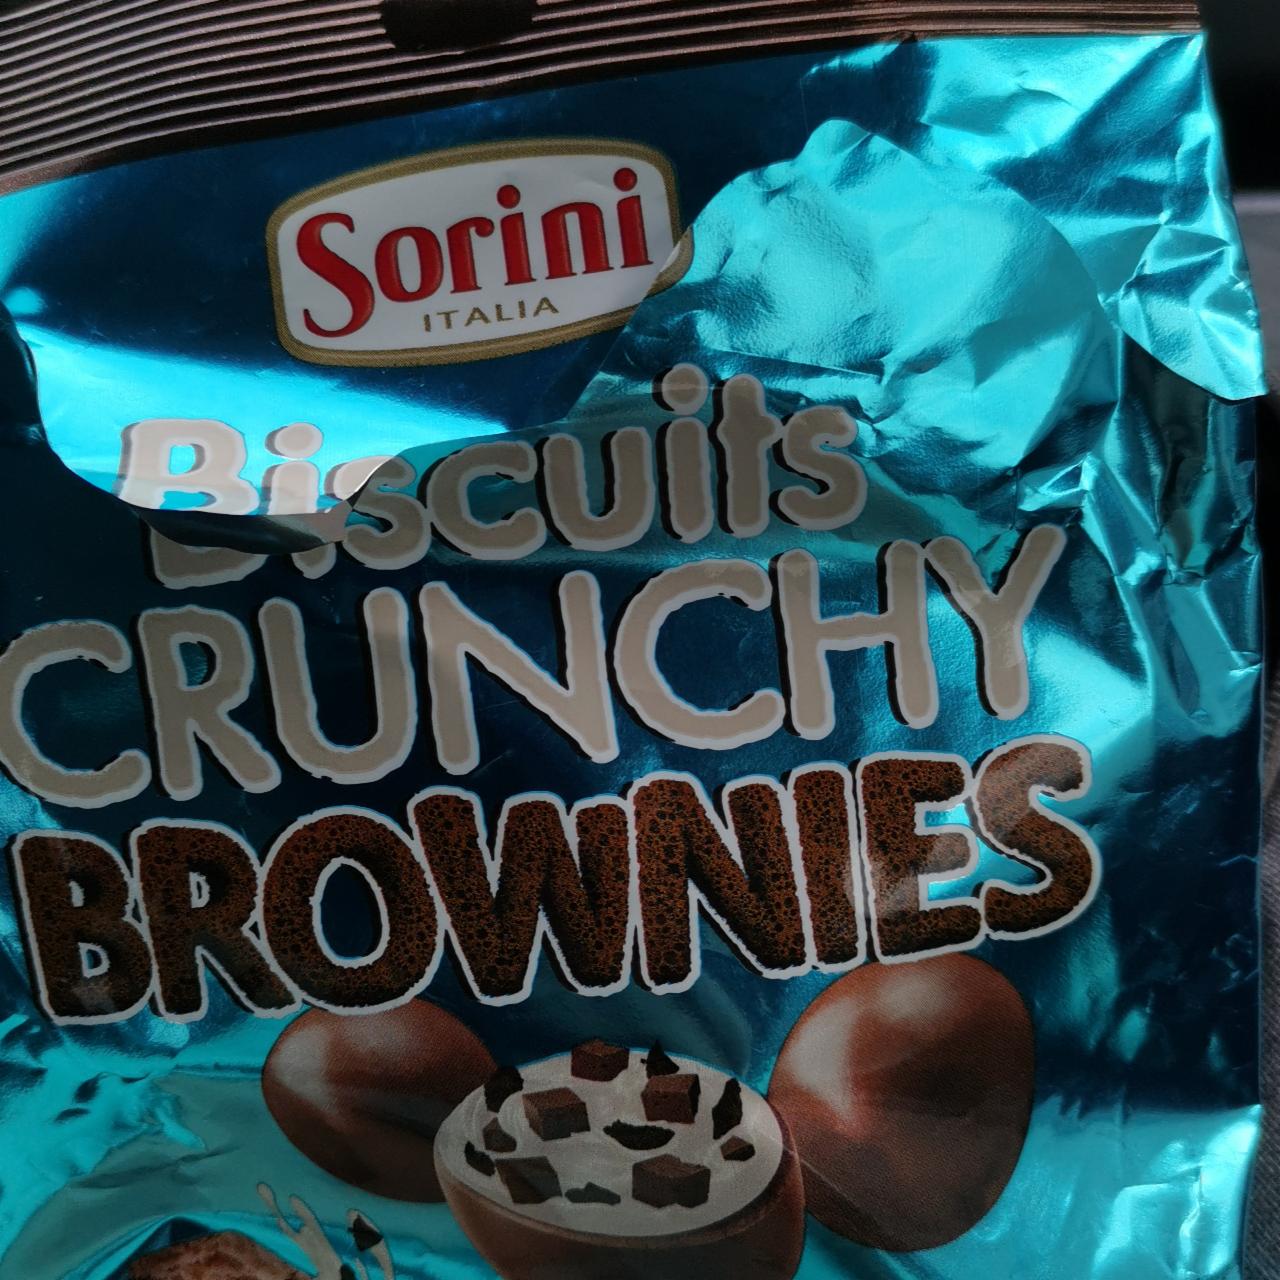 Fotografie - Biscuits crunchy brownies Sorini